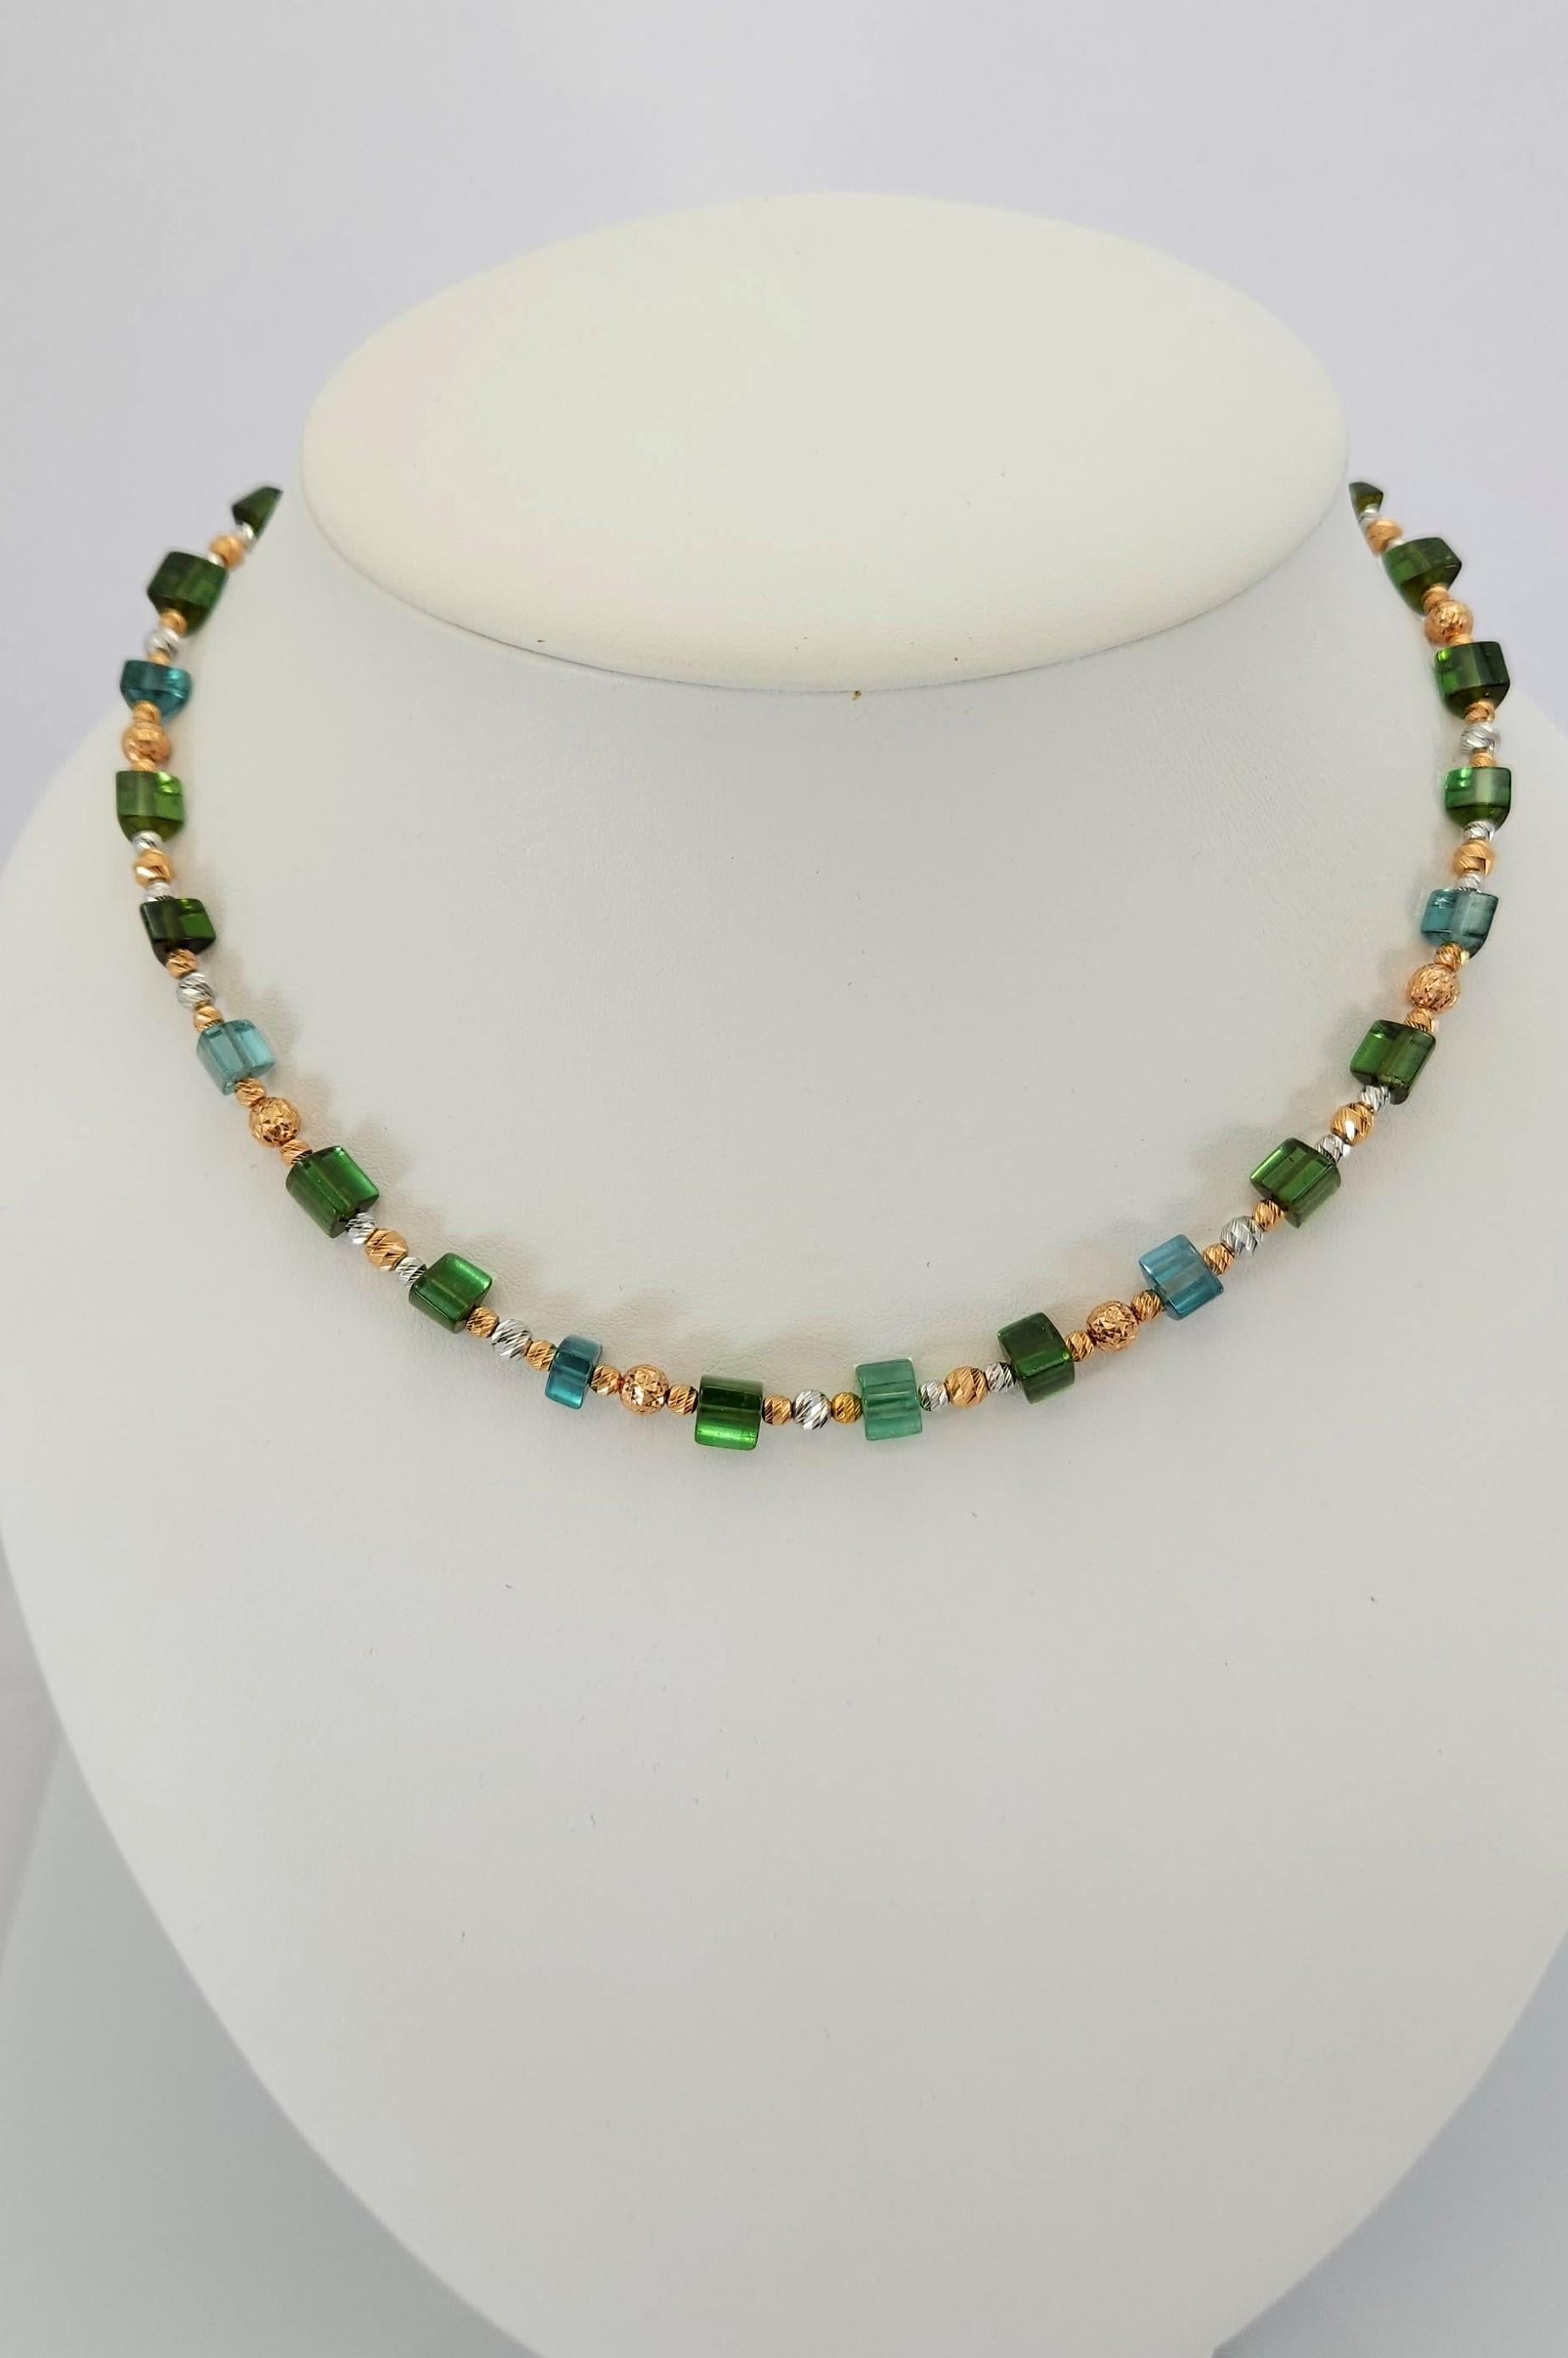 Ce collier de perles en cristal de tourmaline vert-bleu naturel et or rose et blanc 18 carats est fait à la main.
La découpe et l'orfèvrerie sont de qualité allemande. Le fermoir à vis est facile à manipuler et très sûr.
Le fermoir triangulaire en